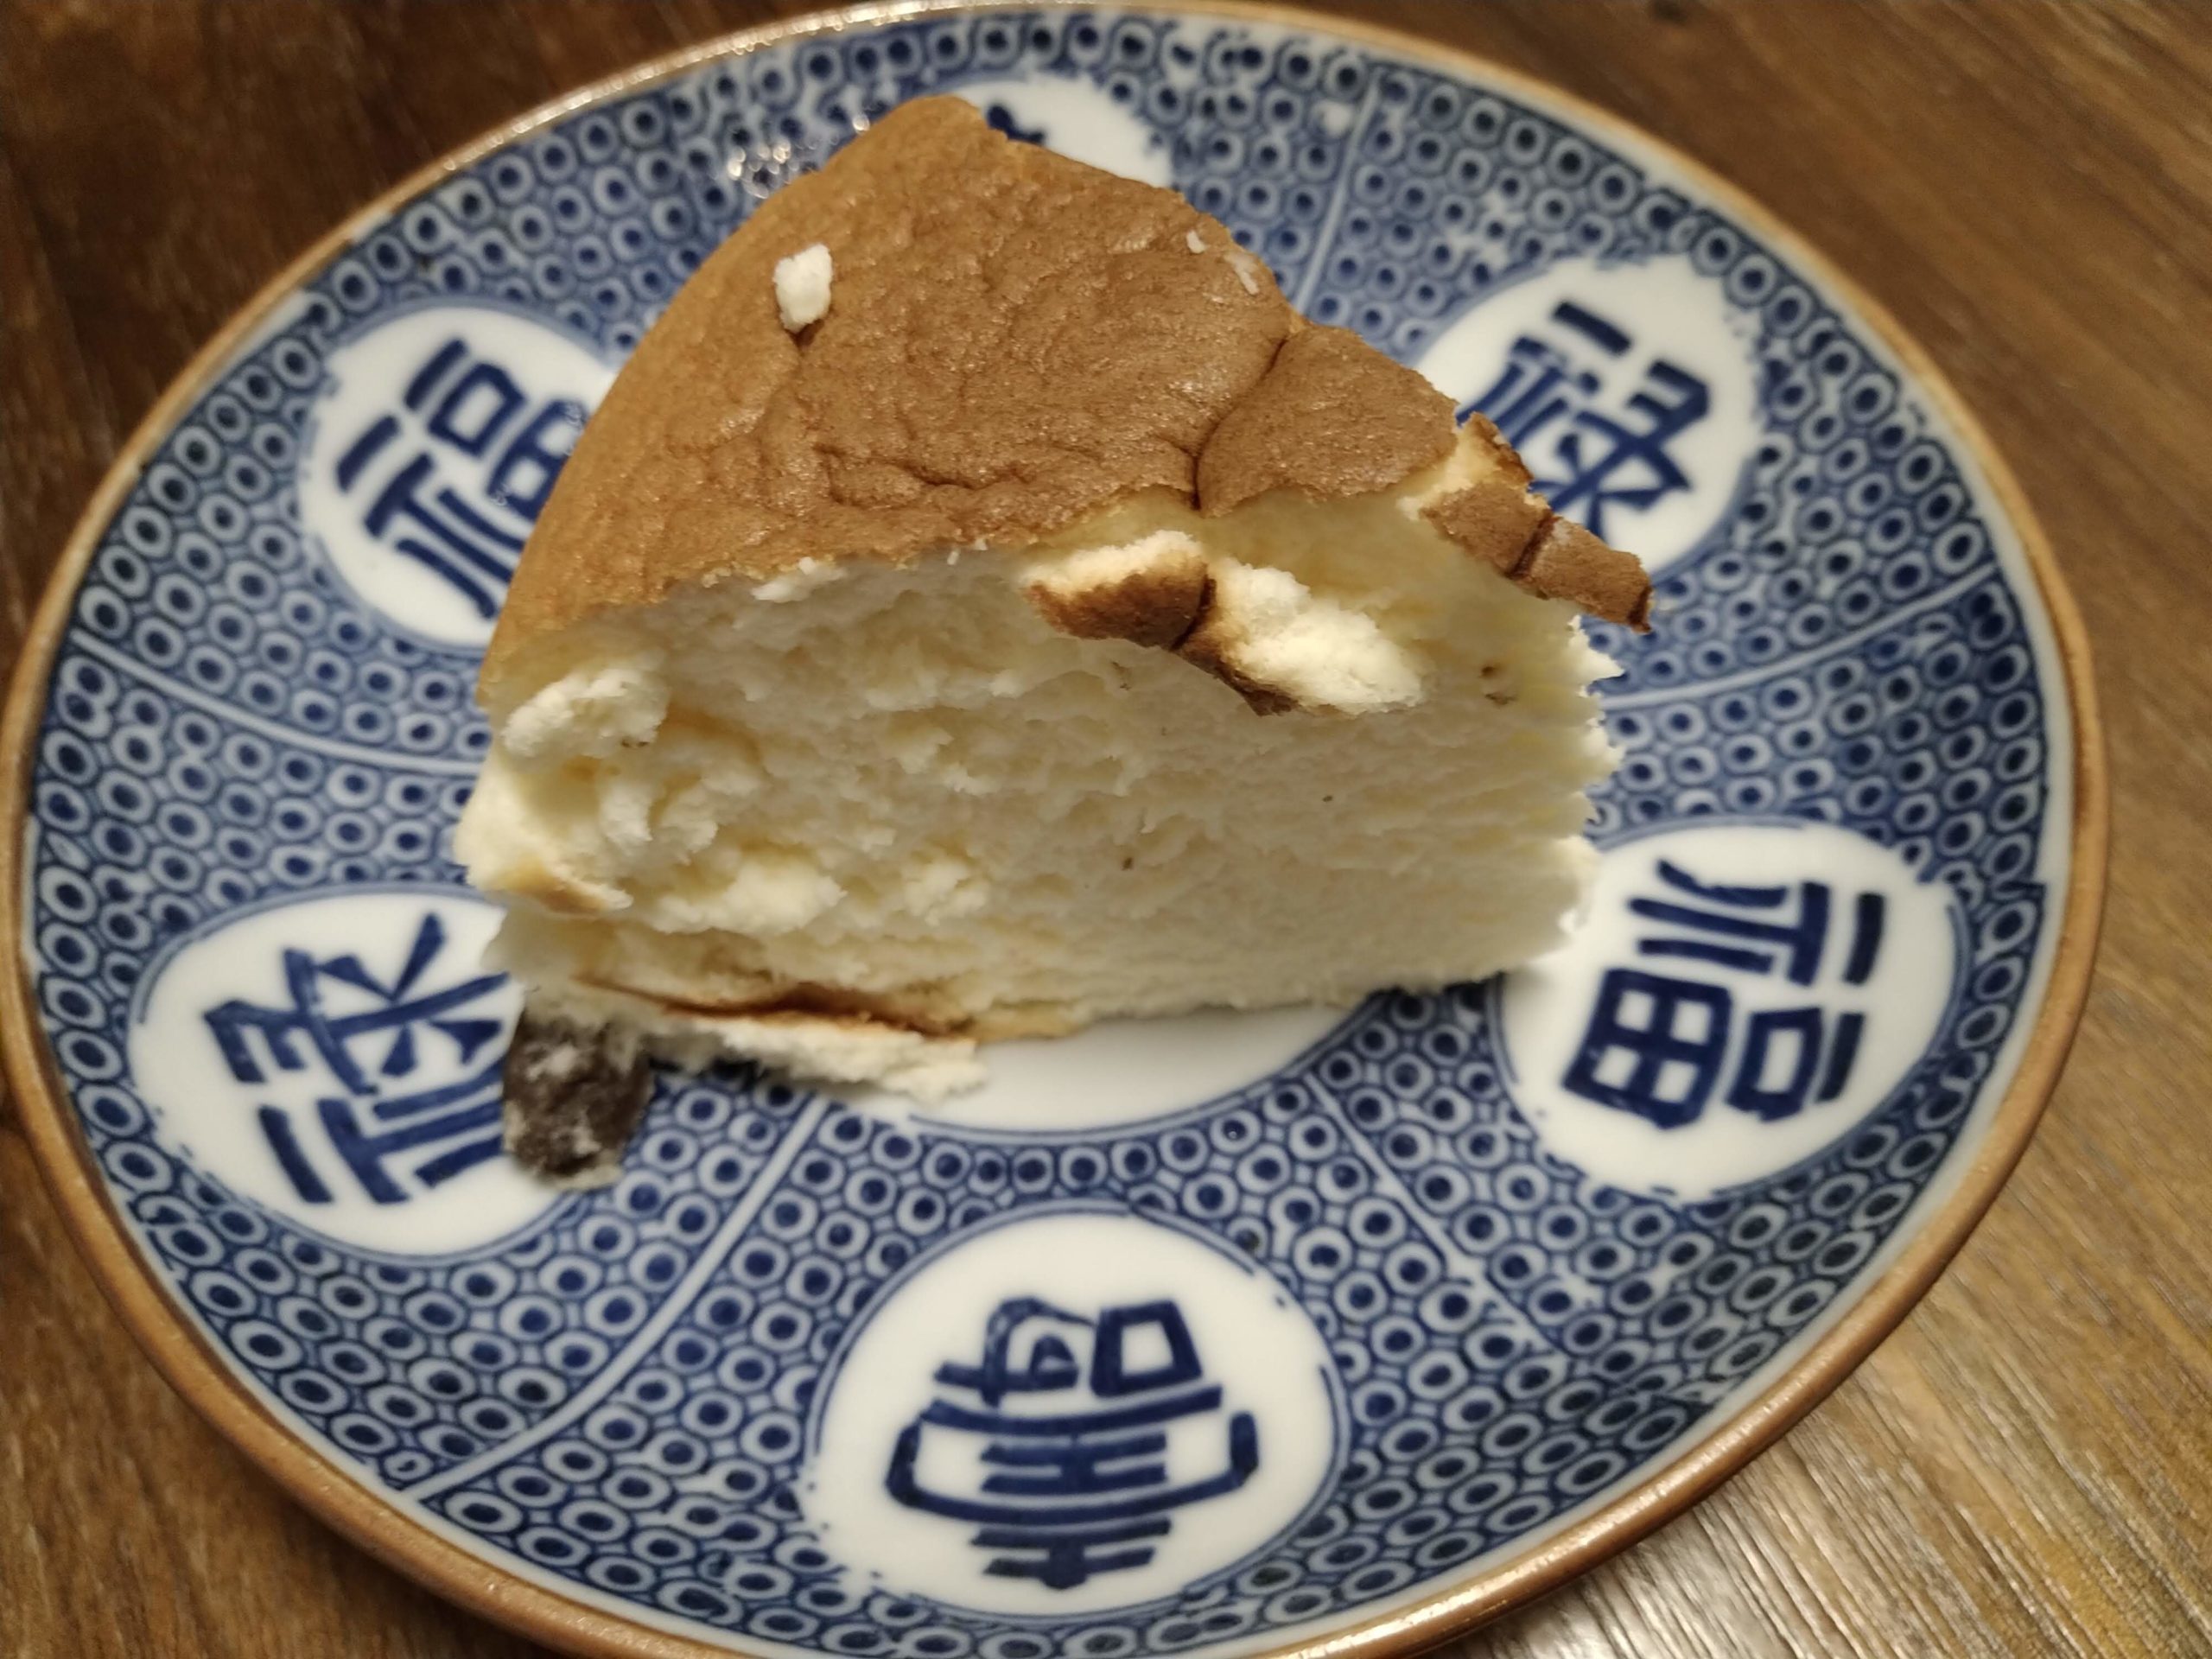 大阪 新しいお土産 りくろーおじさんの店 でチーズケーキを新大阪駅改札内で買える 京都ストーリー